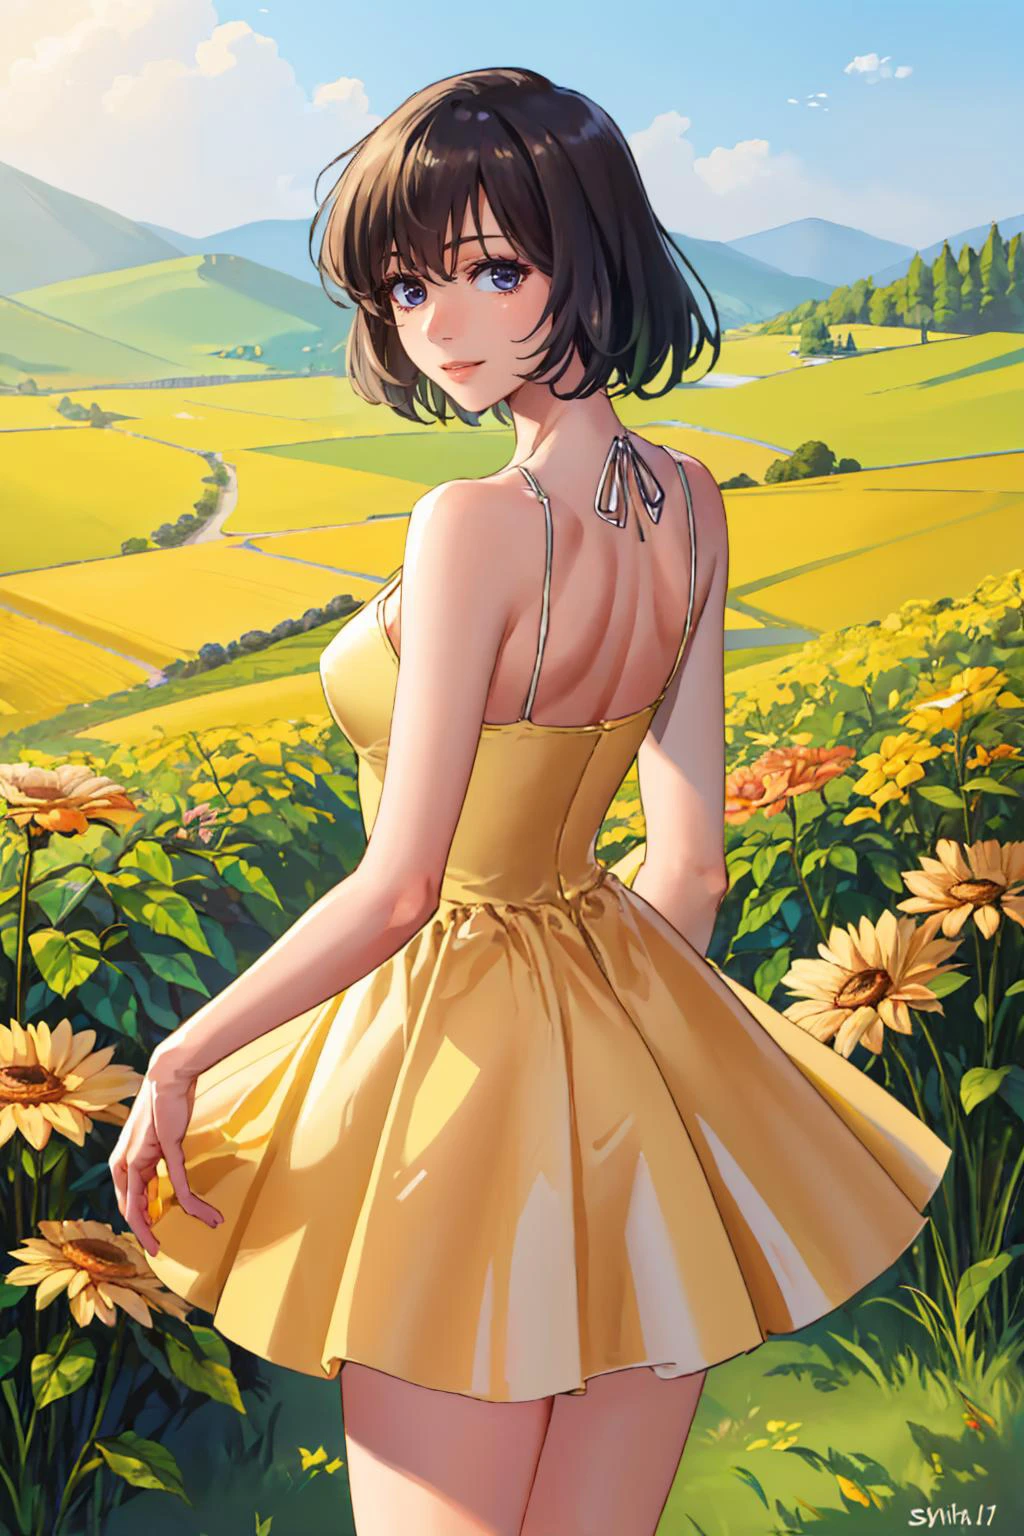 (Obra de arte, melhor qualidade:1.2), Sozinho, 1 garota, cadeiasumeragi, leve sorriso, Olhando para trás, vestido de verão amarelo, campo de flores 